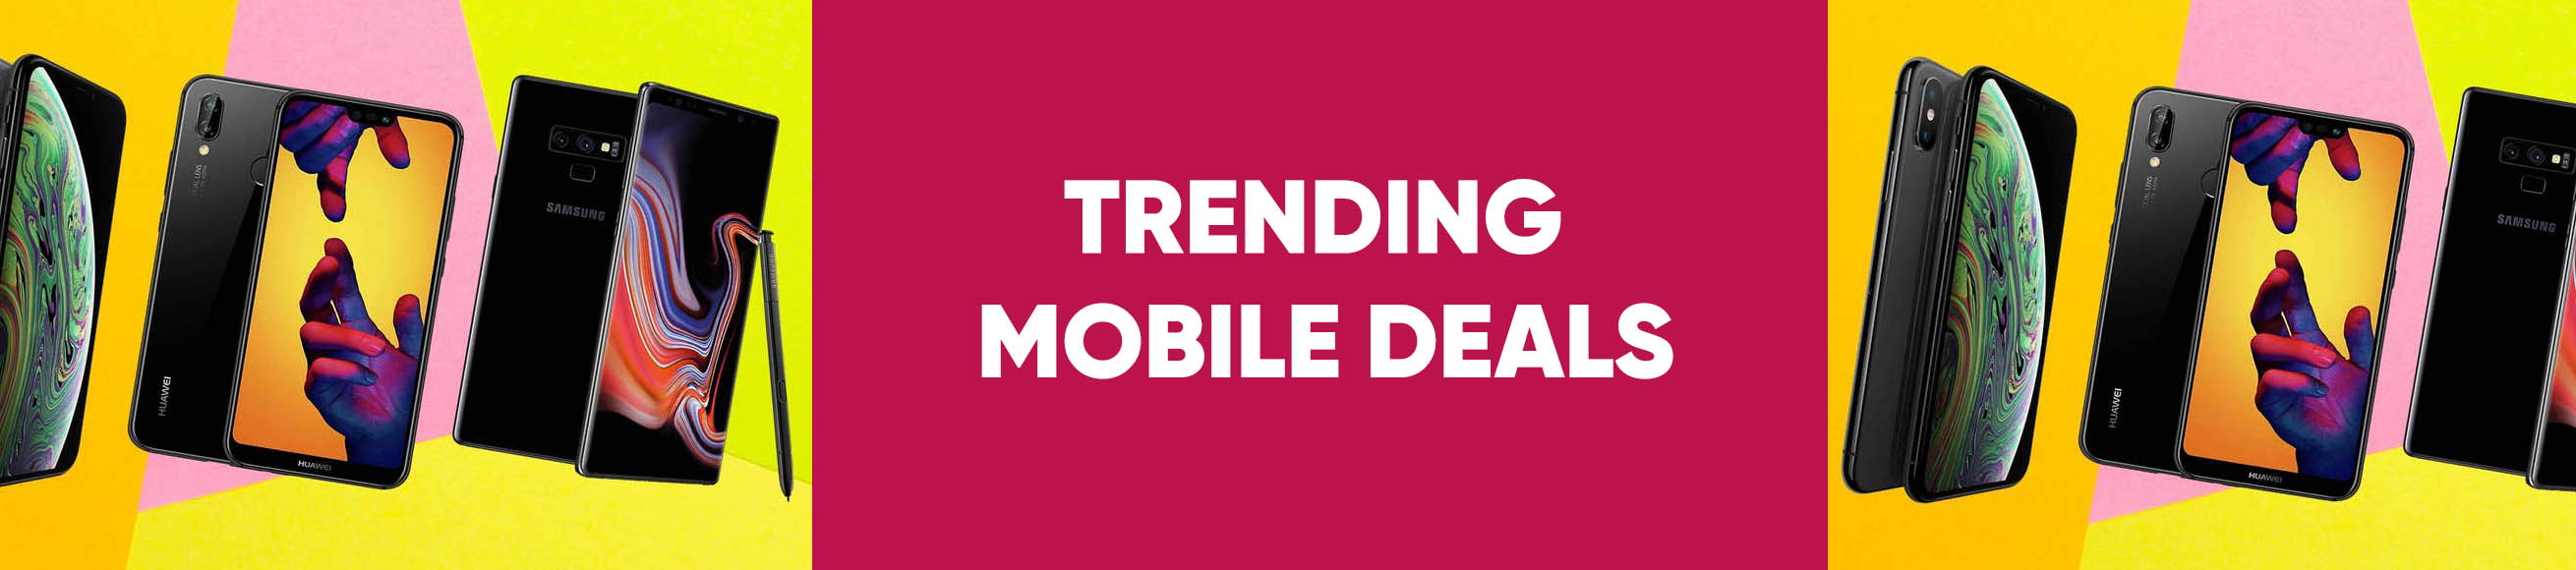 Trending Mobiles Deals & Offers